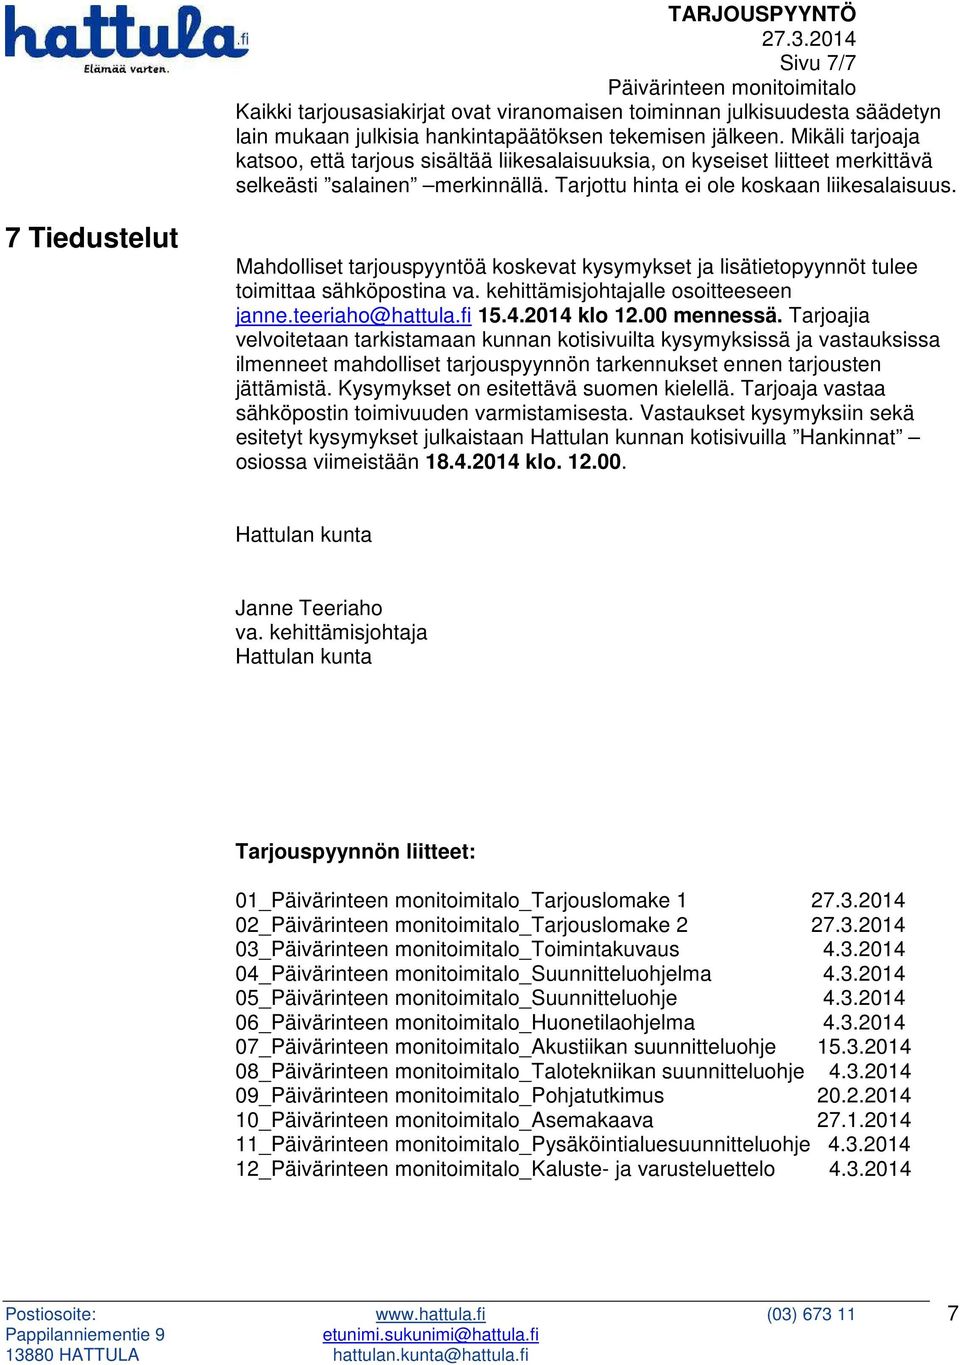 7 Tiedustelut Mahdolliset tarjouspyyntöä koskevat kysymykset ja lisätietopyynnöt tulee toimittaa sähköpostina va. kehittämisjohtajalle osoitteeseen janne.teeriaho@hattula.fi 15.4.2014 klo 12.